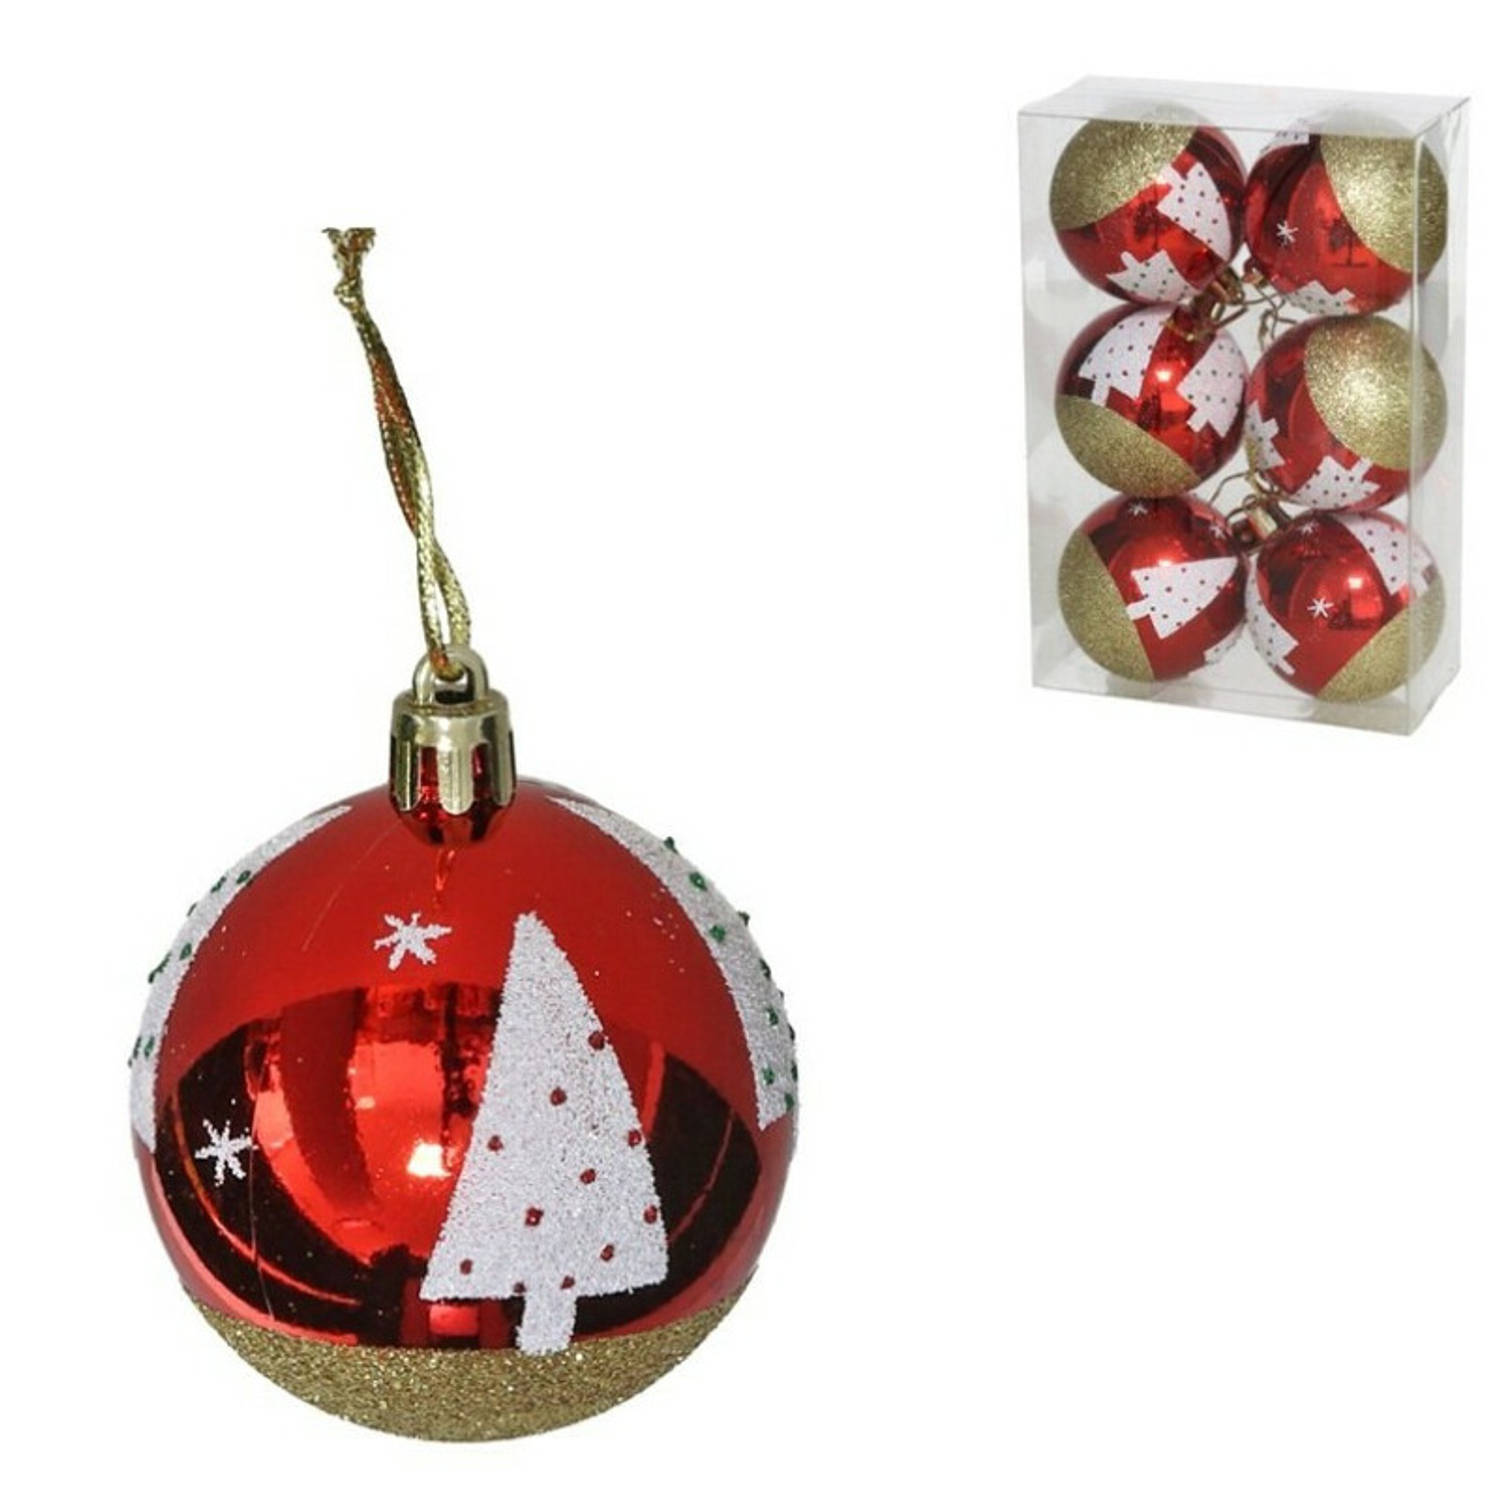 Gerim gedecoreerde kerstballen- 6x - 6 cm - kunststof -rood met kerstboom